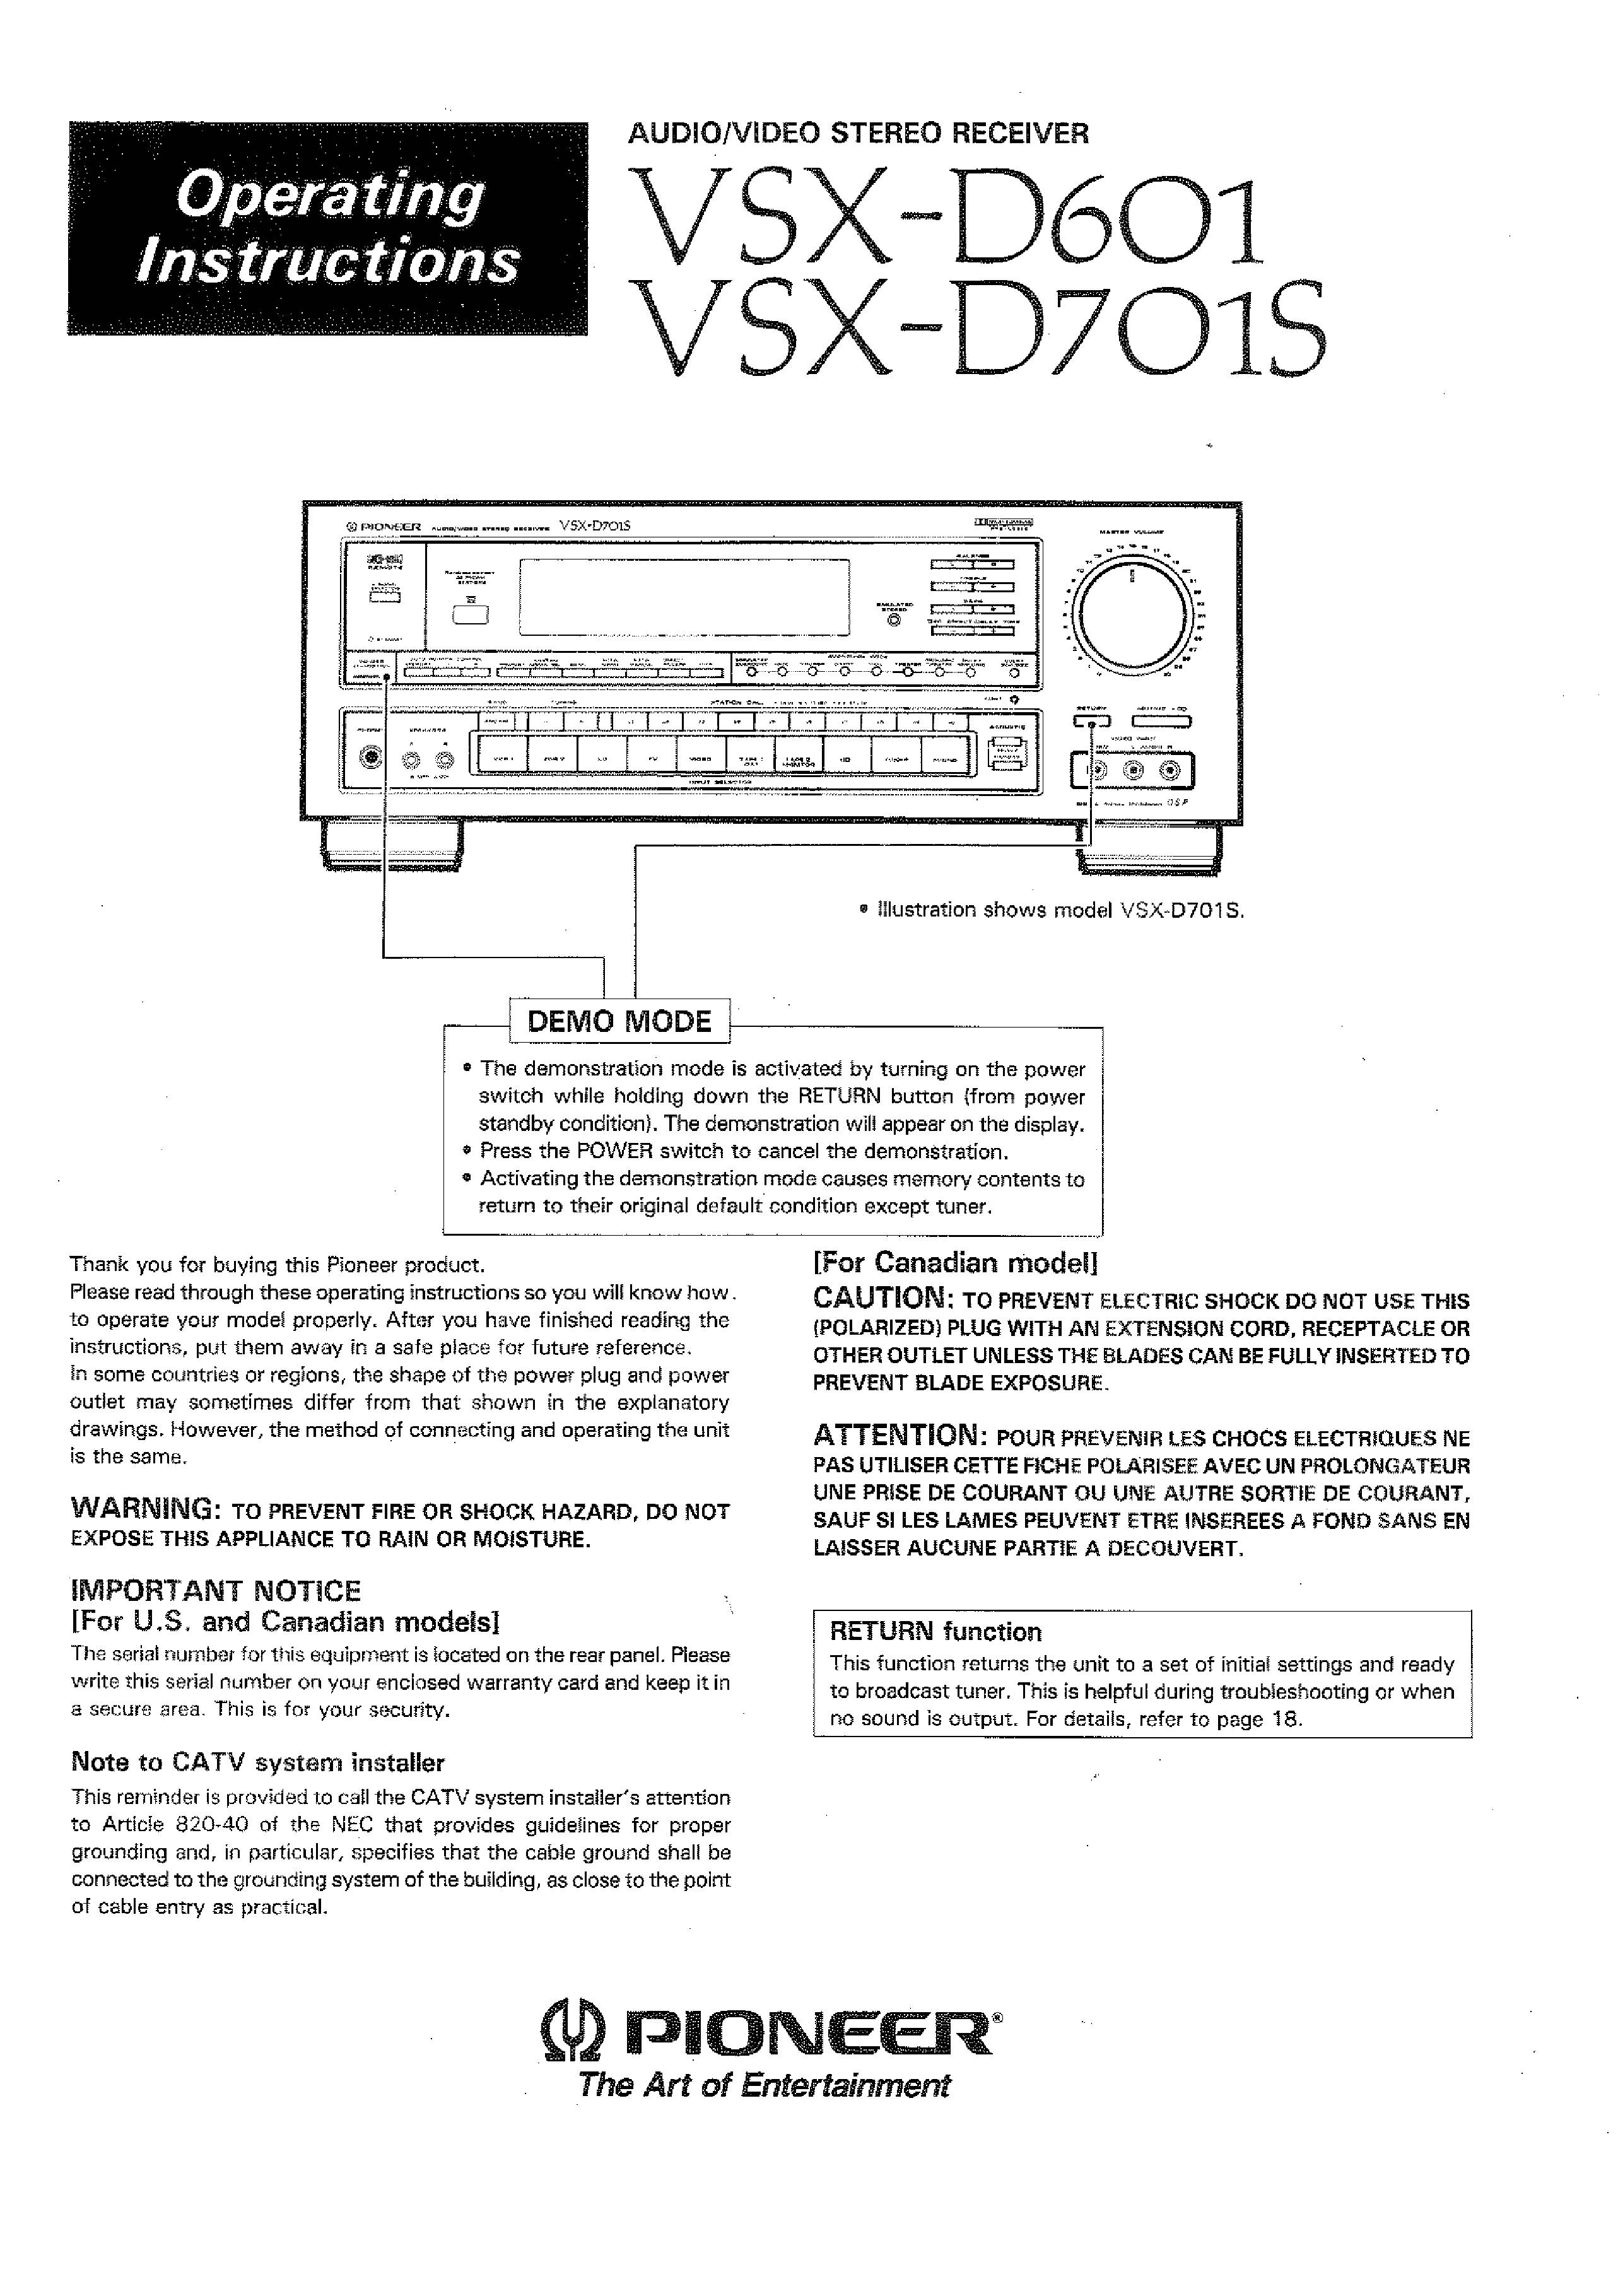 Pioneer VSX-D701S